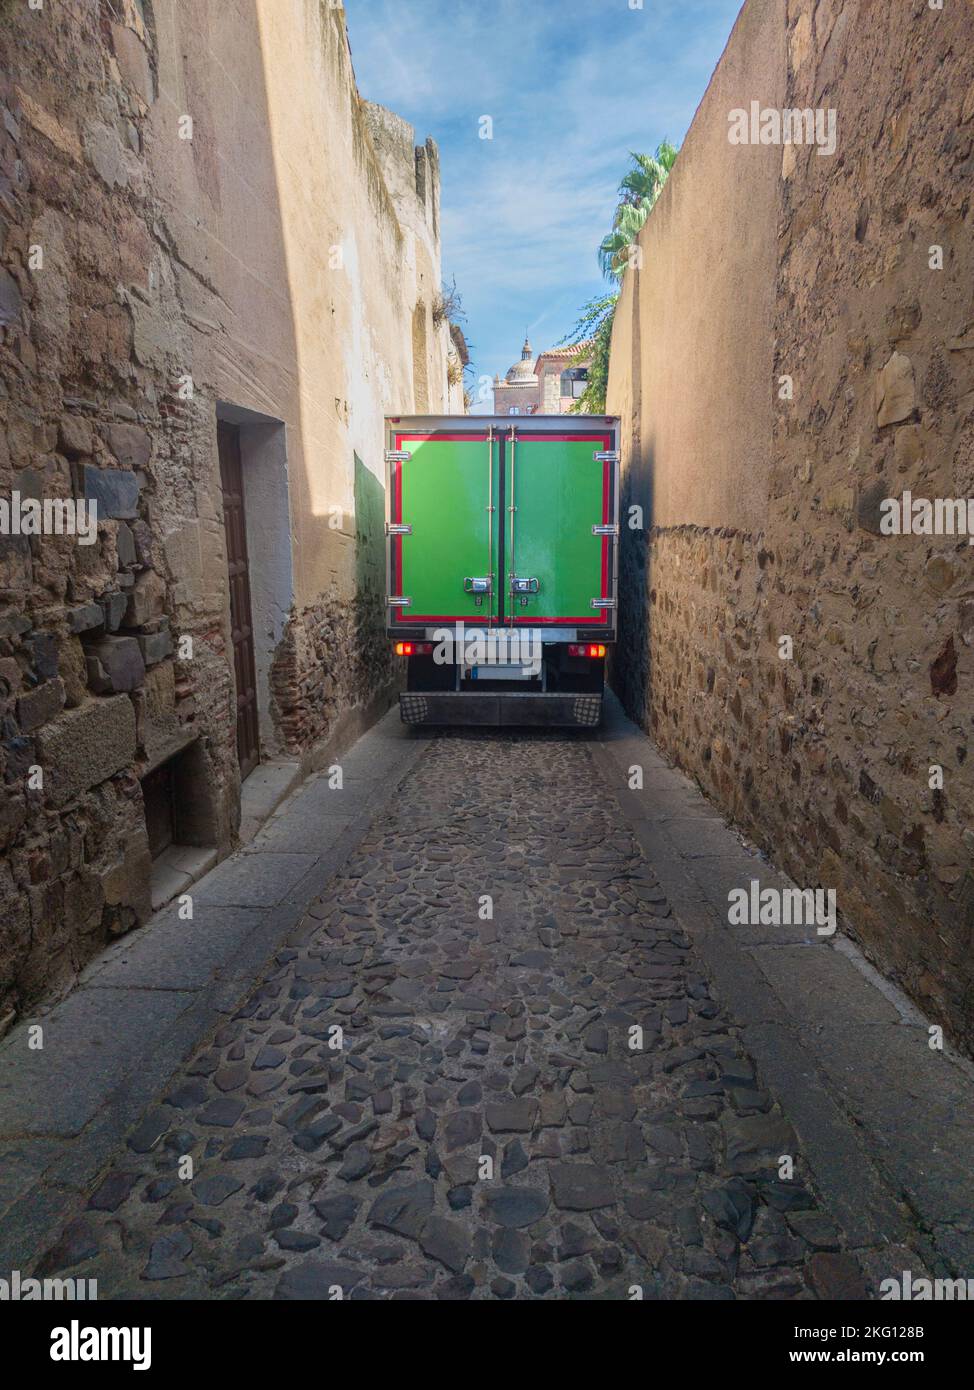 Sattelschlepper, der vorsichtig durch eine enge Straße in der Innenstadt fährt. Lieferungen im Altstadtkonzept Stockfoto